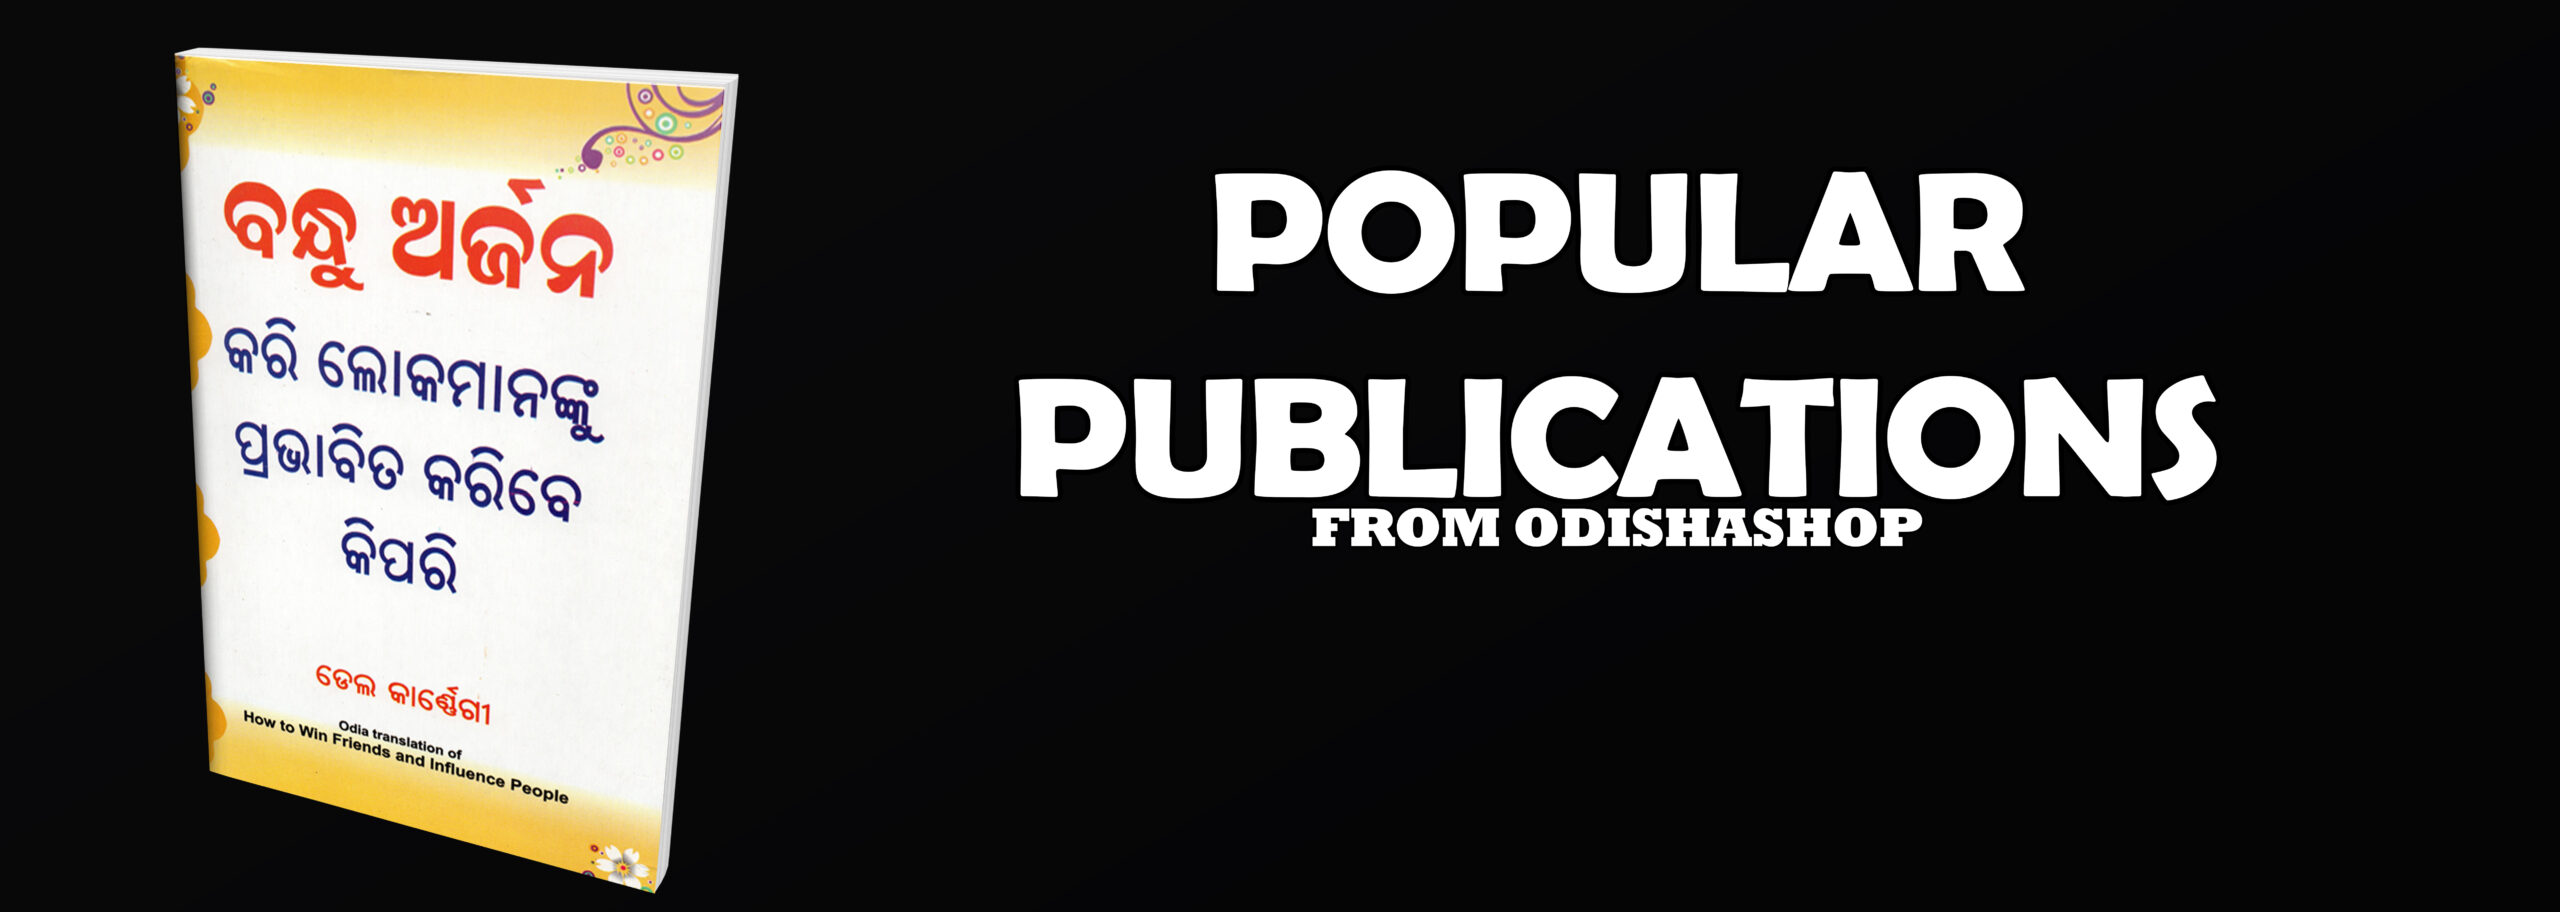 POPULAR PUBLICATIONS